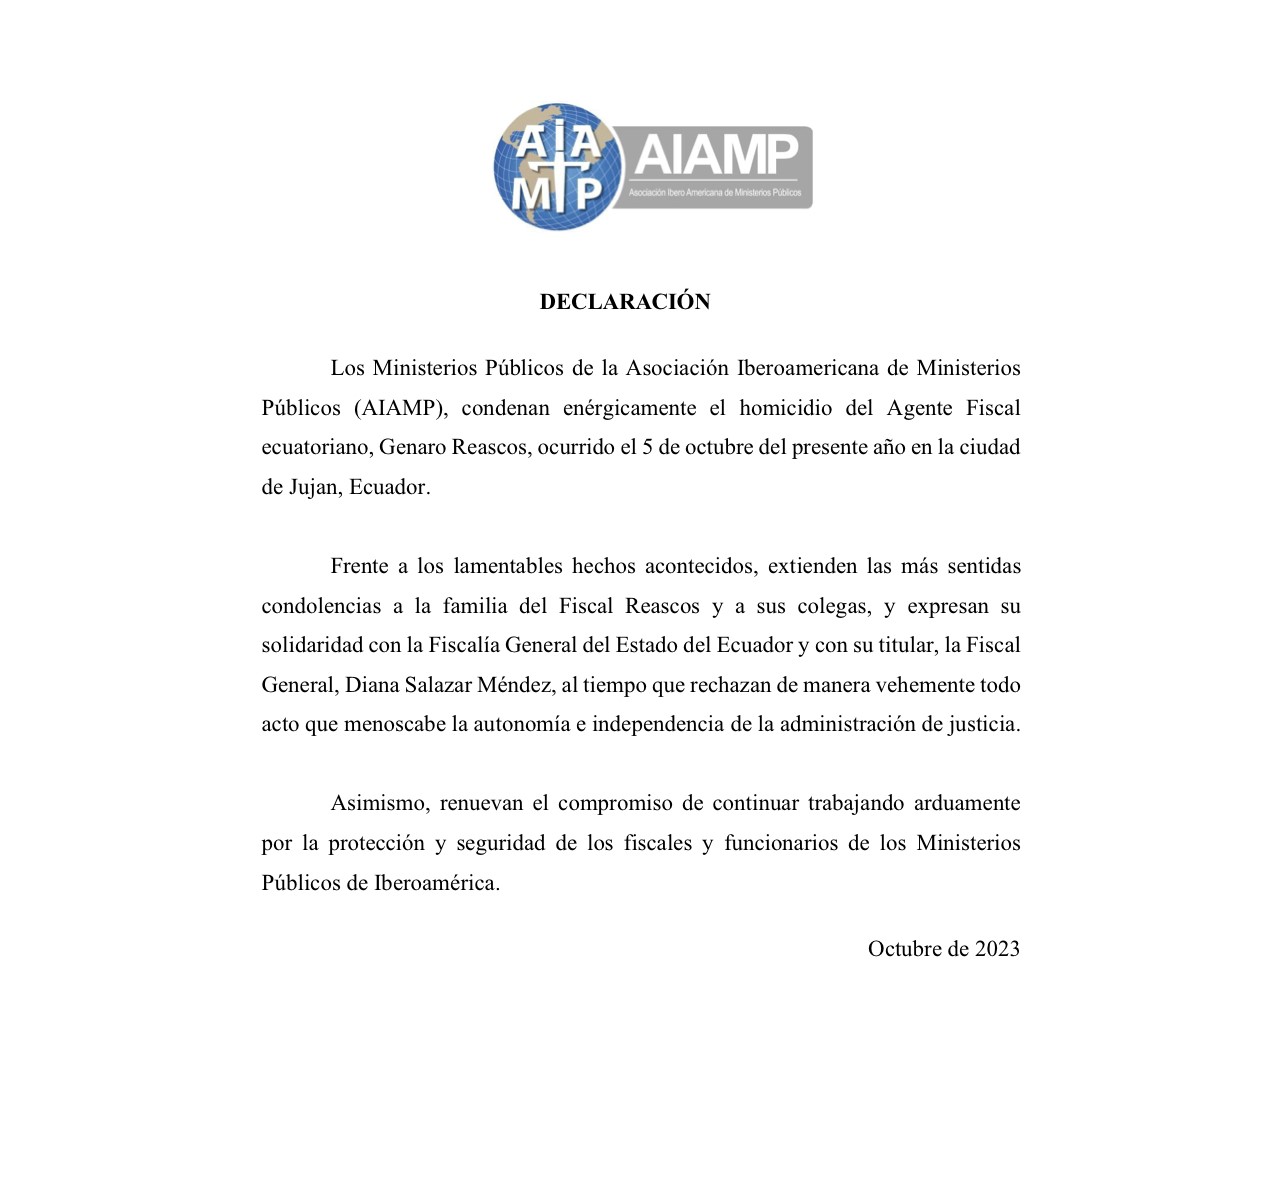 Declaración de los Ministerios Públicos de la Asociación Iberoamericana de Ministerios Públicos de la (AIAMP) de condena por el homicidio del Fiscal ecuatoriano, Genaro Reascos.